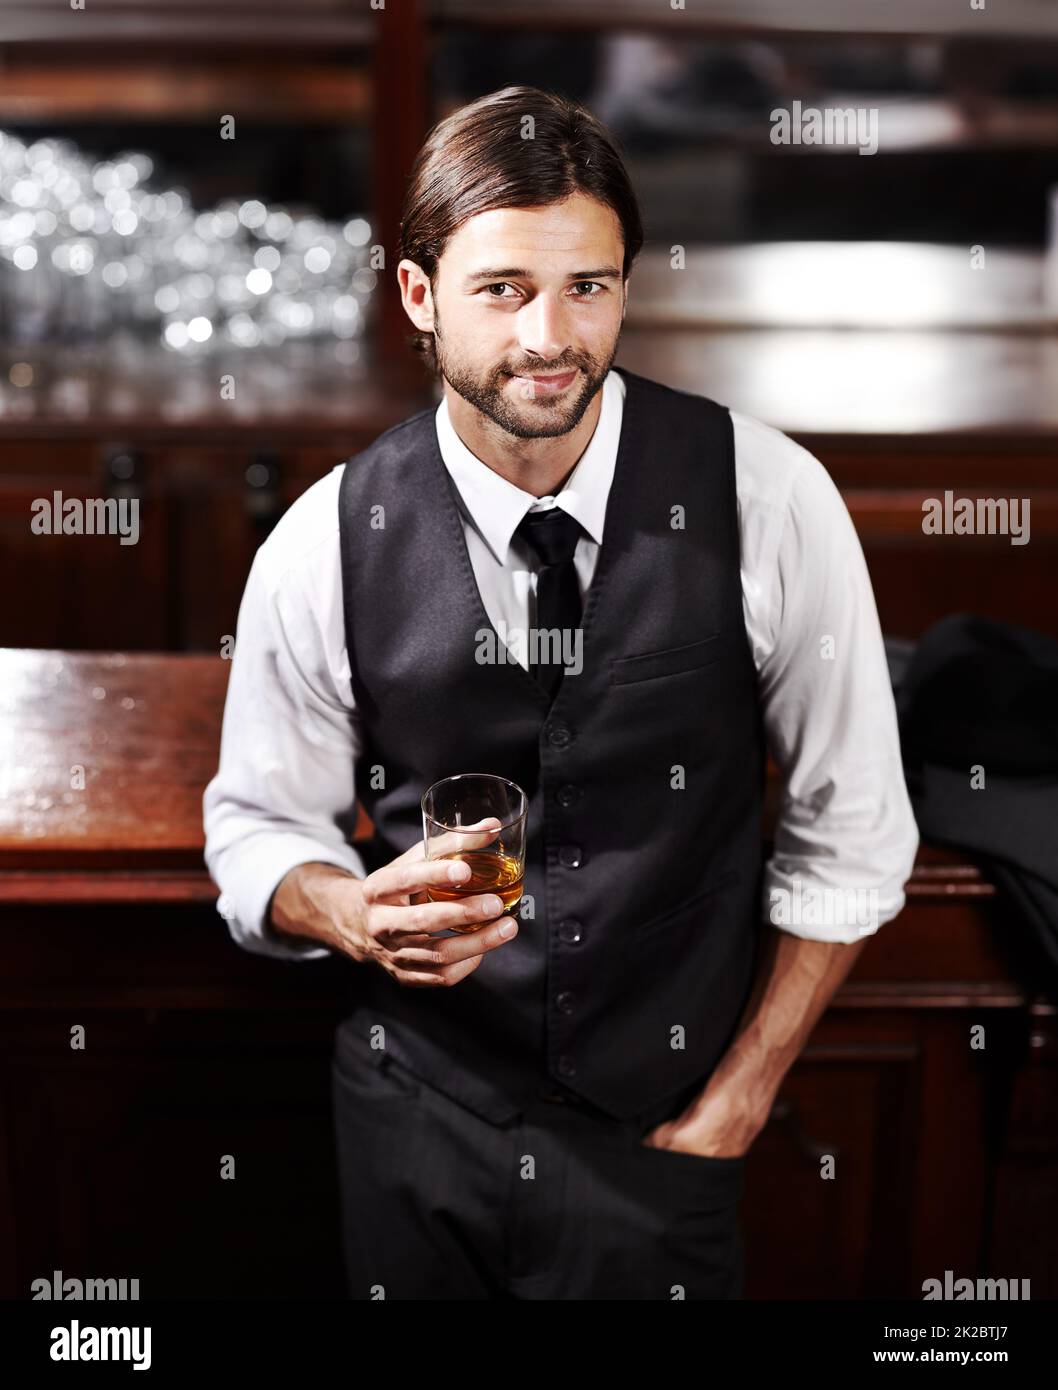 Es ist einfach. Porträt eines gut gekleideten jungen Mannes, der bei einem Drink an einer Bar sitzt. Stockfoto